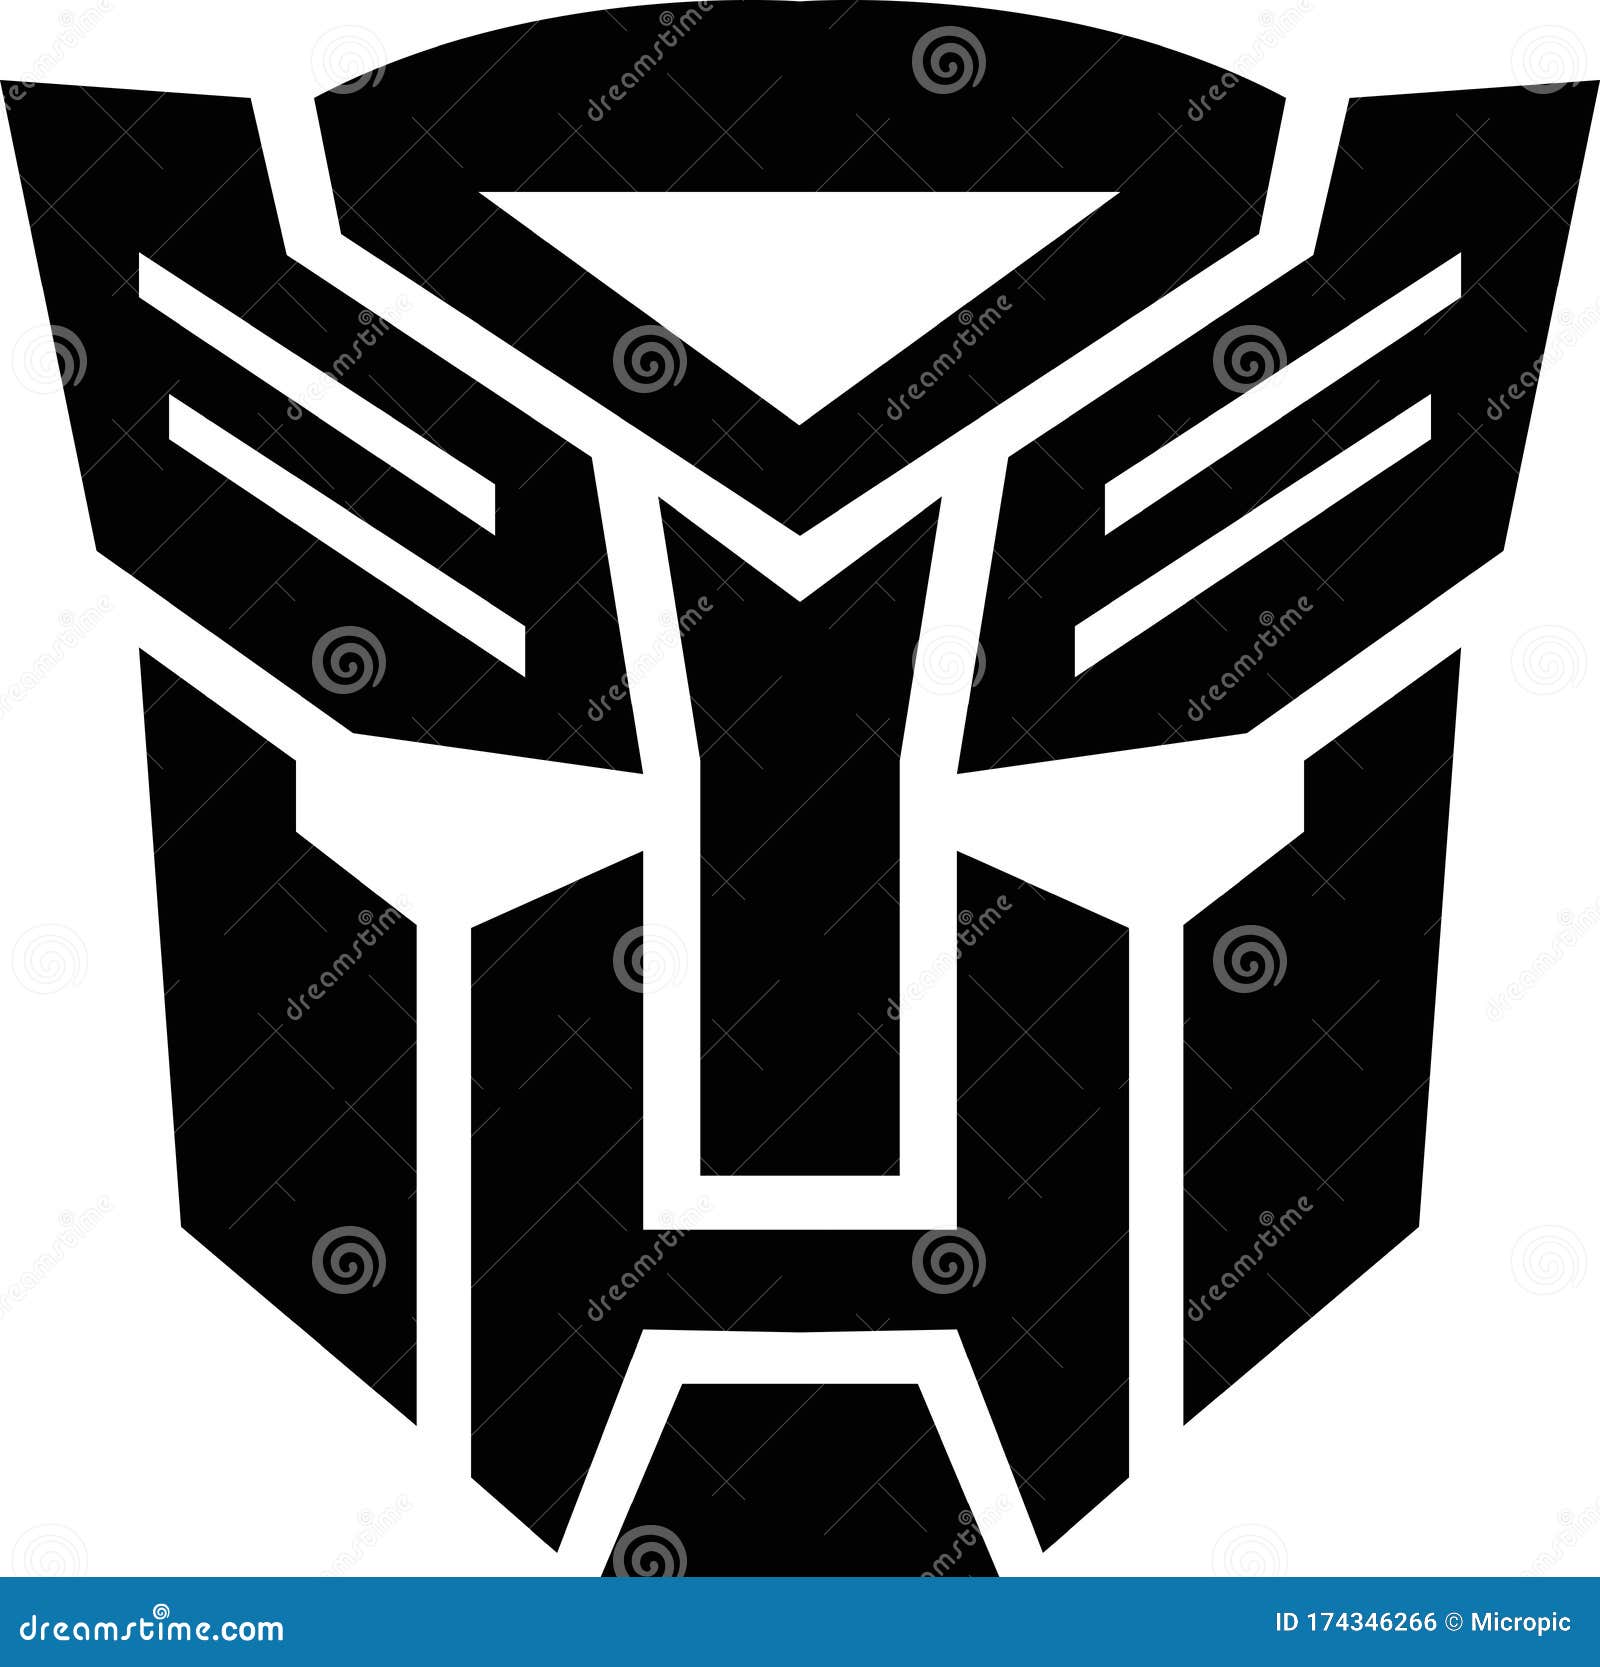 Logo Transformers Stock Illustrations - 31 Logo Transformers Stock Illustra...